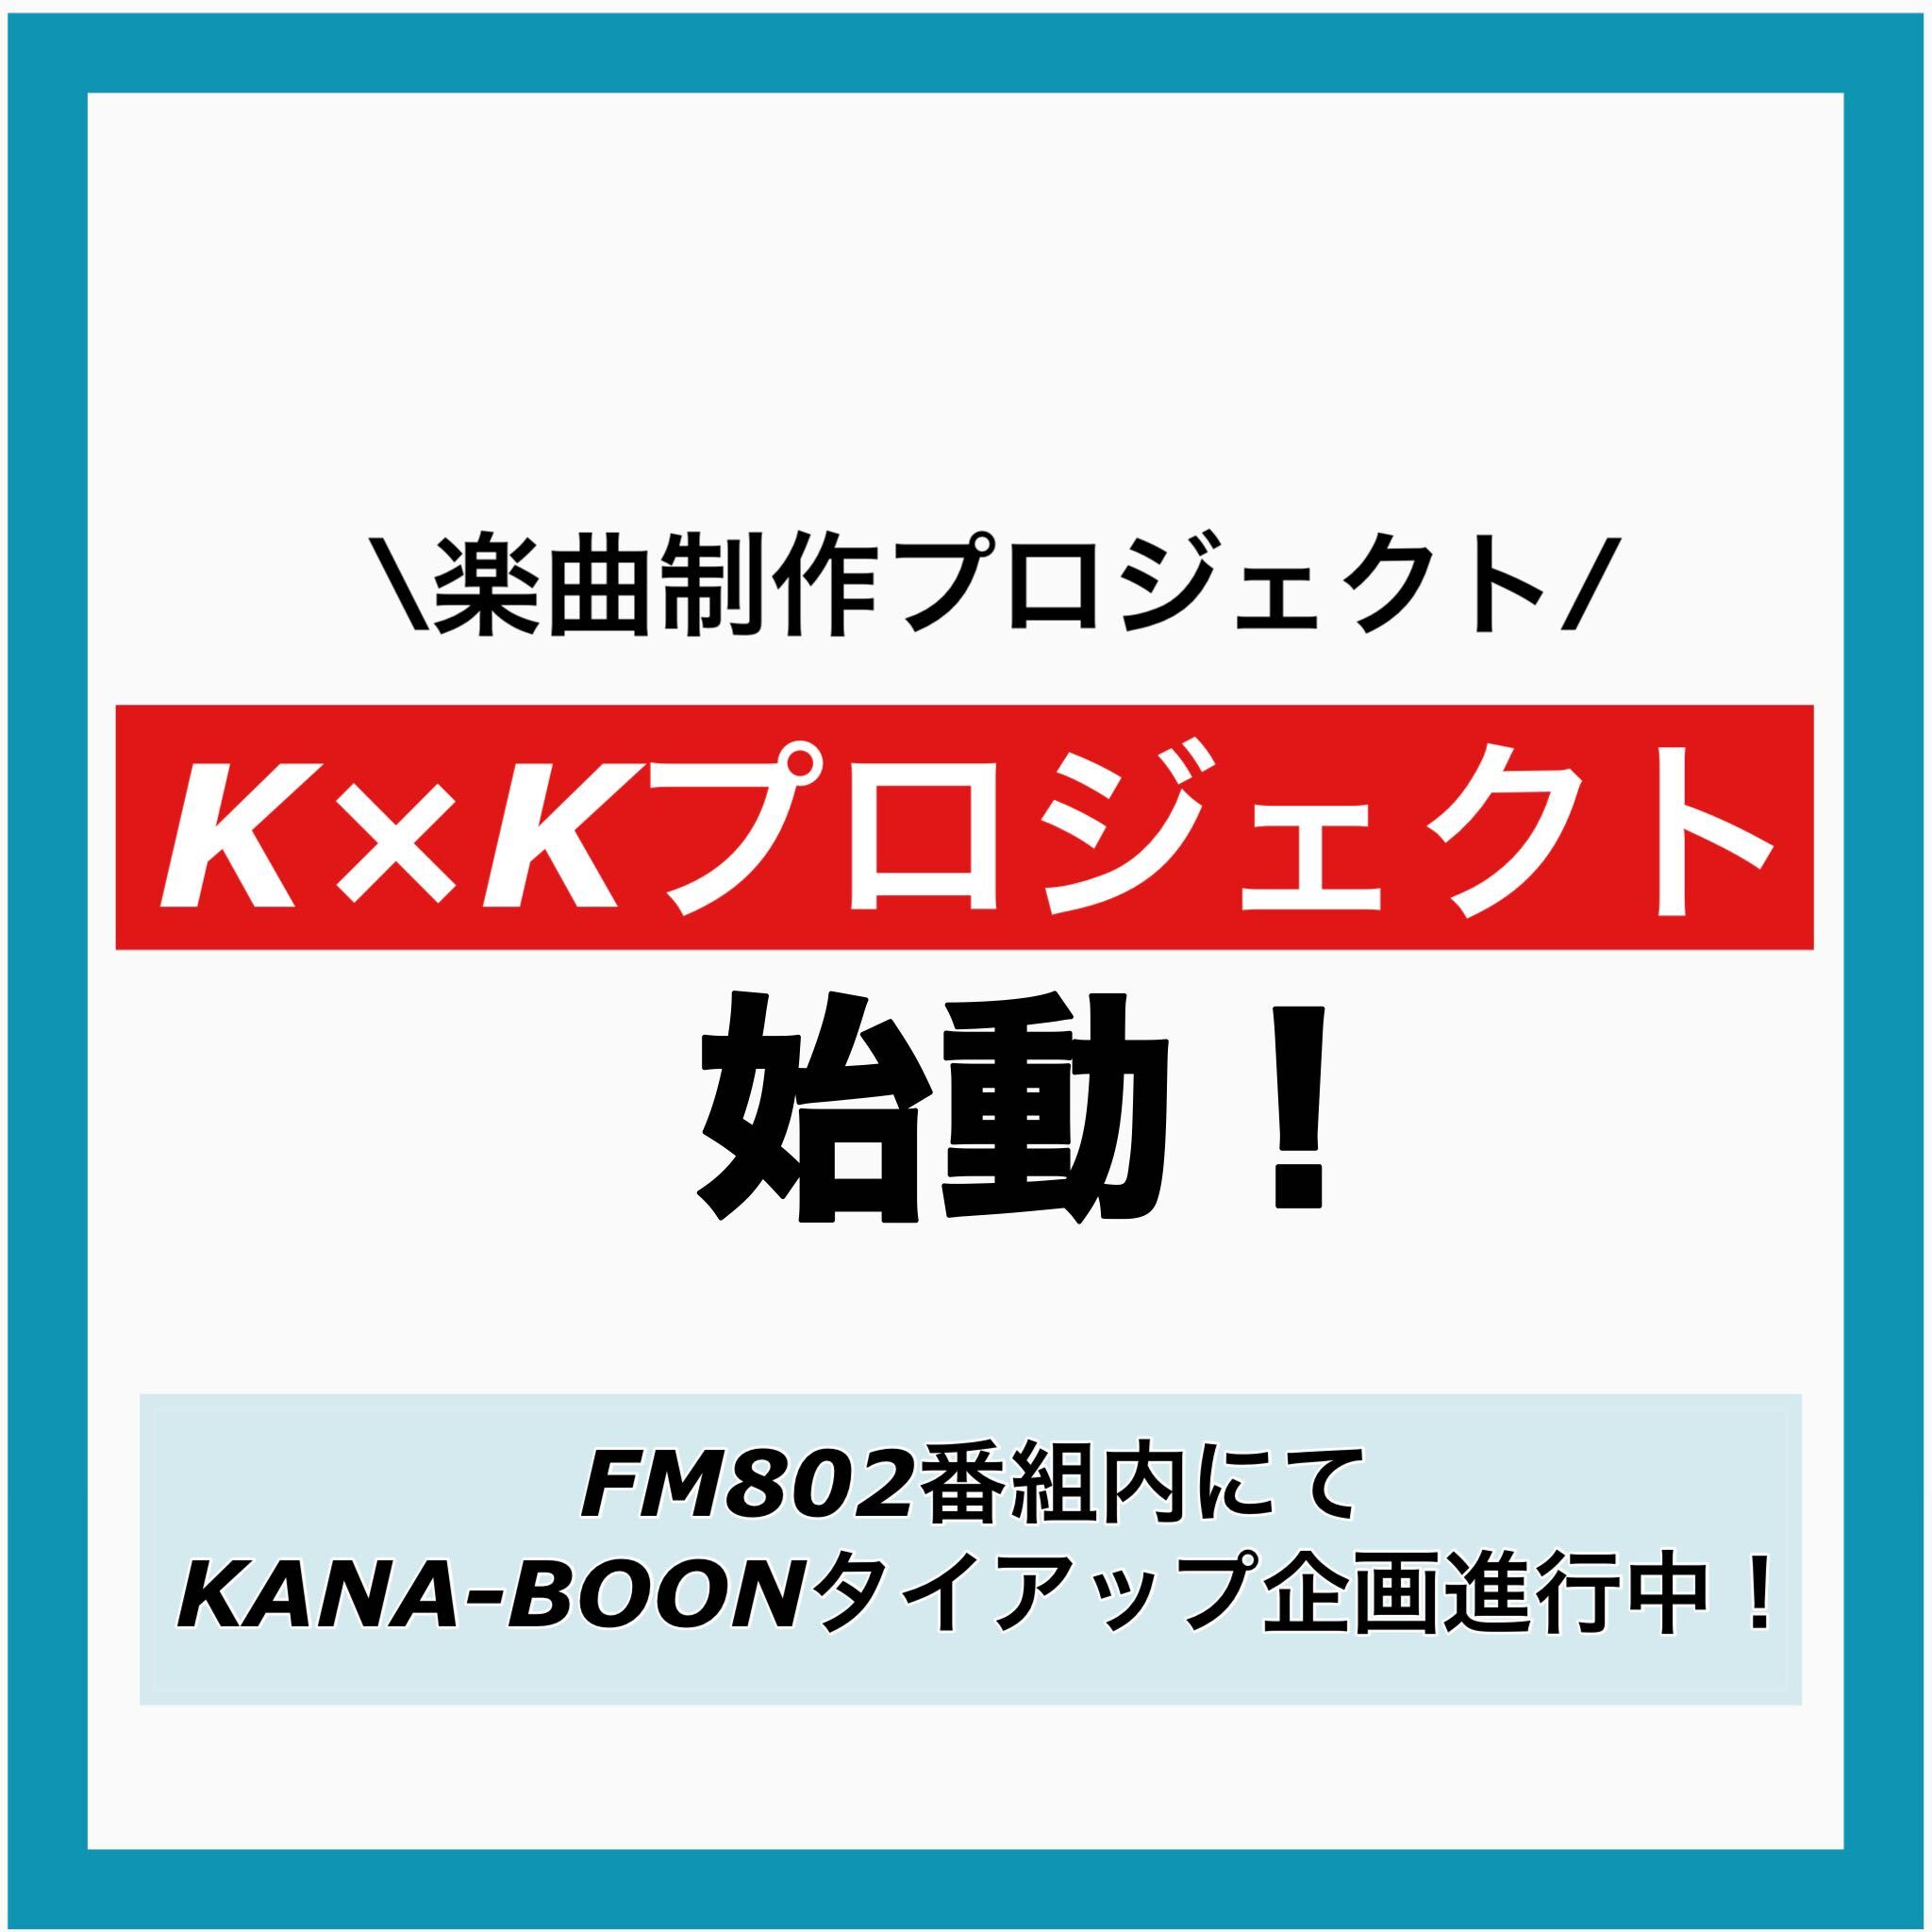 ラジオ番組【FM802 ROCK KIDS 802 -OCHIKEN Goes ON!!-「京都光華女子大学 MY REQUEST」】にて『KANA-BOON』とのタイアップ企画始動 ！